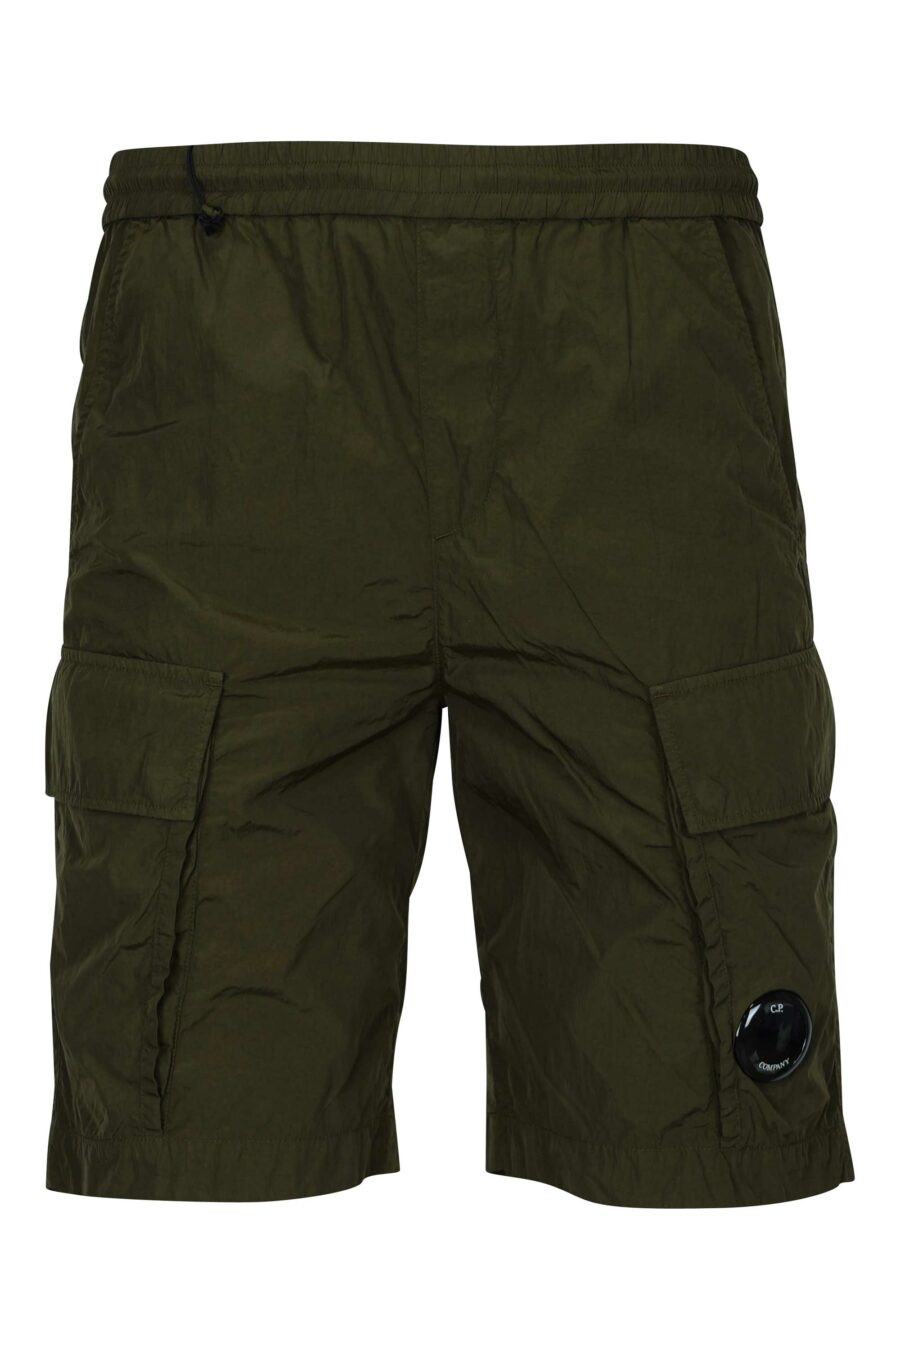 Pantalón corto verde militar con minilogo lente - 7620943785333